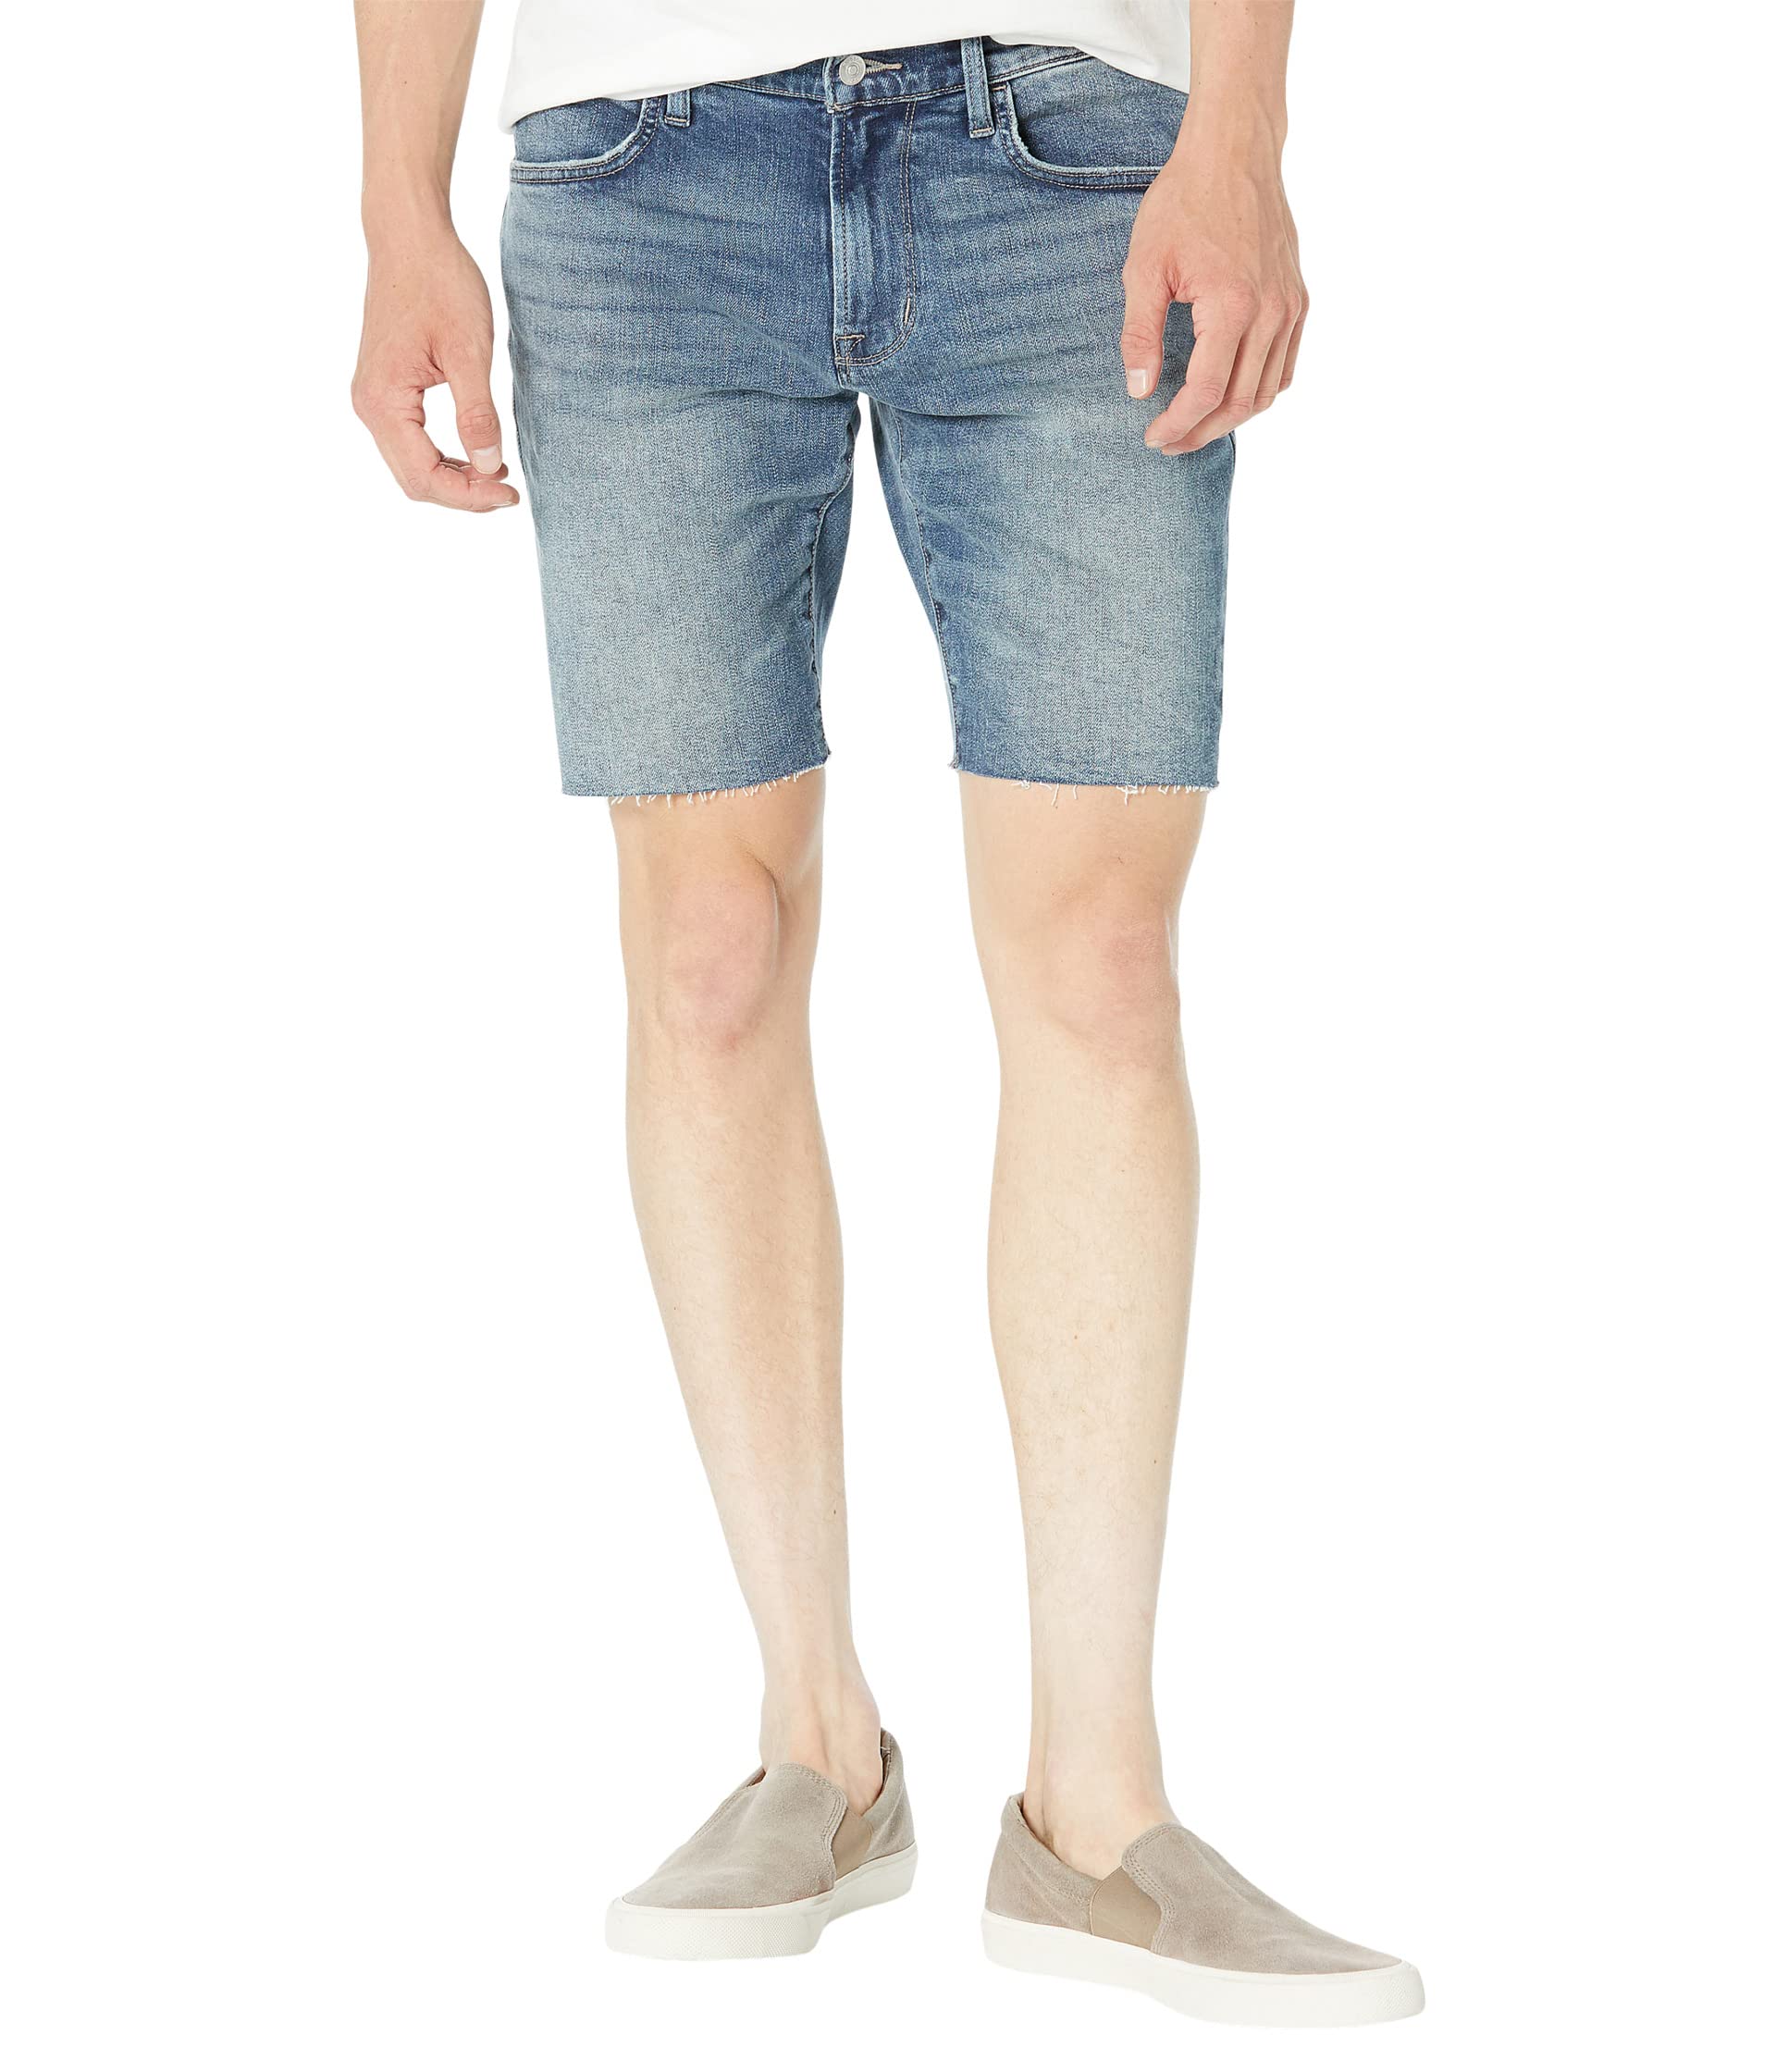 Шорты Hudson Jeans, Rex Shorts перечница гуси 11 см 20120974 0807 leander